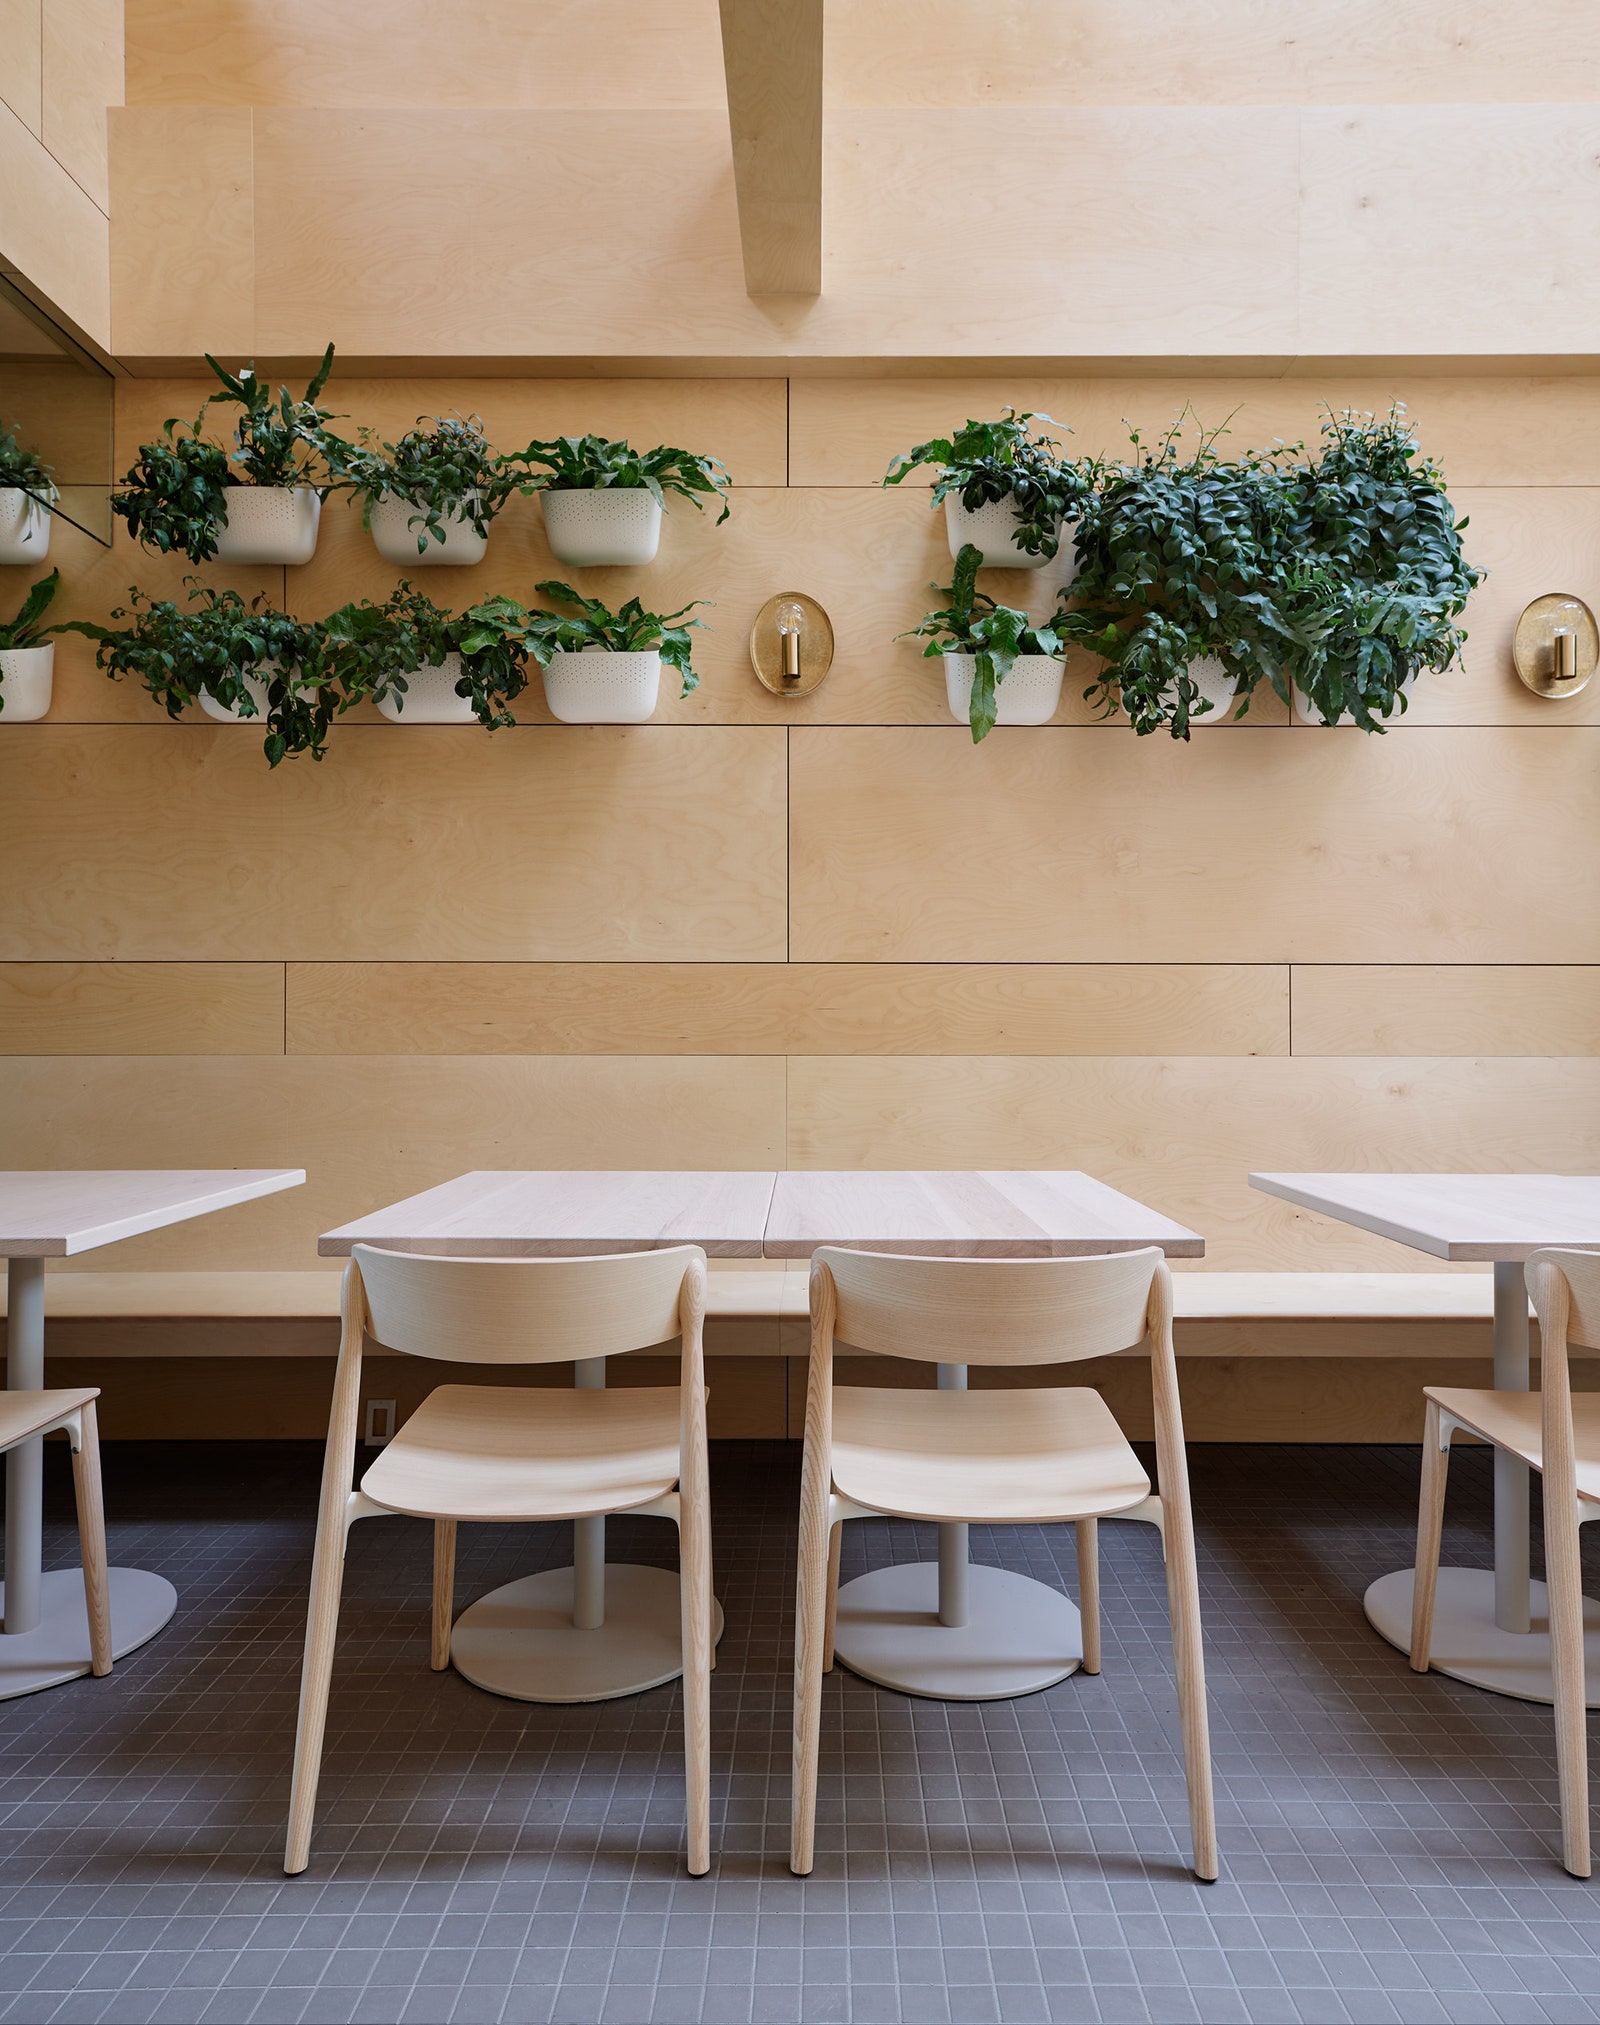 Обновленный интерьер ресторана Lady Marmalade в Торонто по проекту Омара Ганди